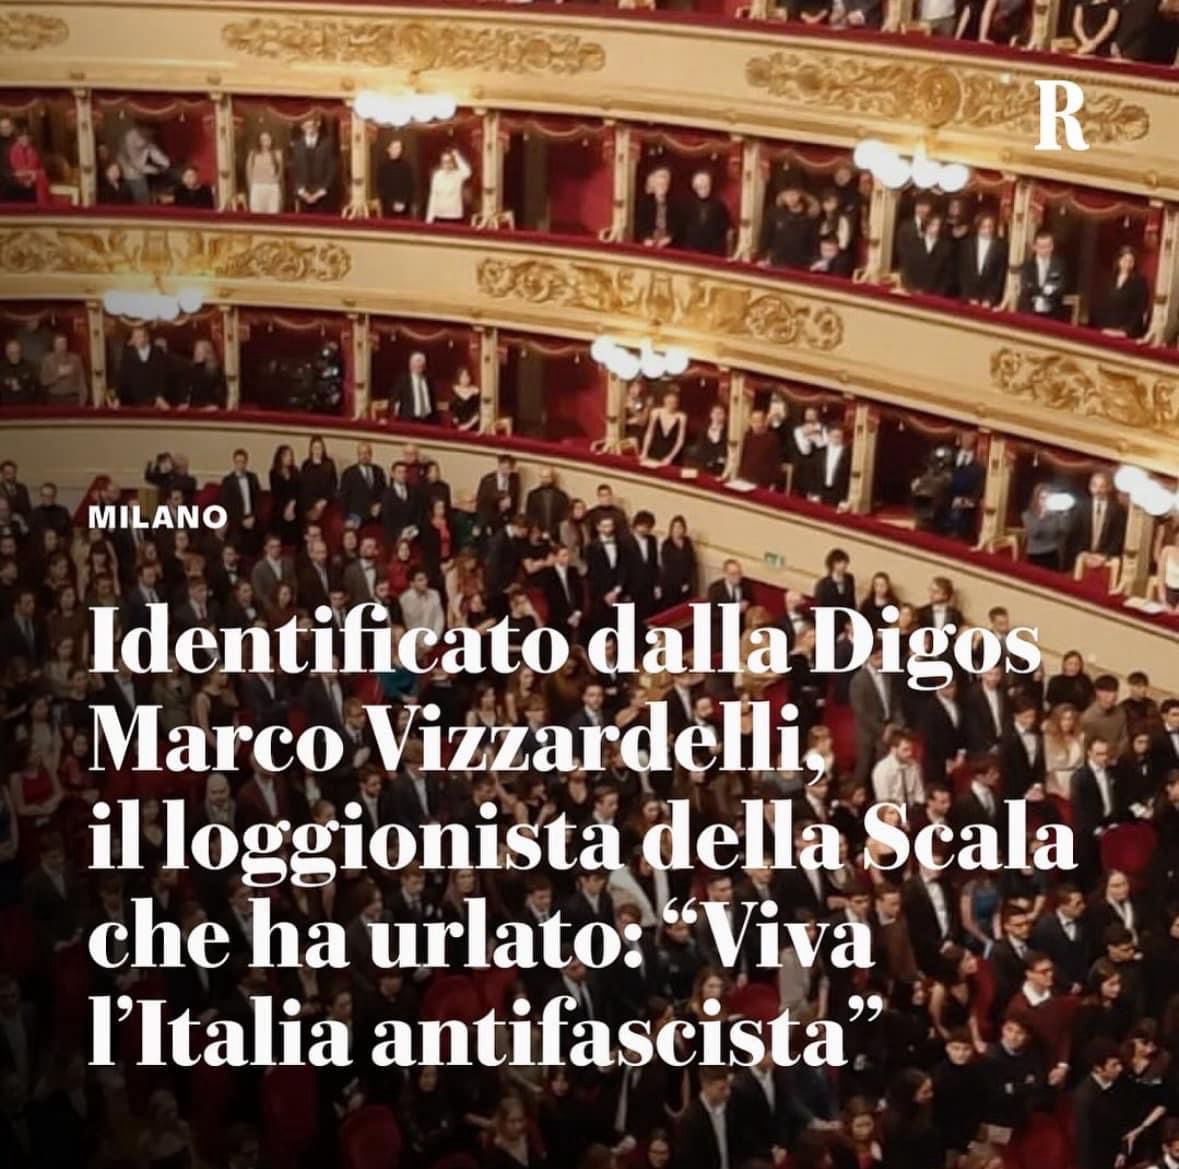 “Viva l’Italia antifascista” Se affermare in pubblico un principio costituzionale è un problema significa che è questo paese ad averne uno.Dovremmo tutti riflettere su quanto accaduto ieri alla Scala.C’è tanto dell’Italia di oggi #VivalItaliaAntifascista #Vivalitaliantifascista